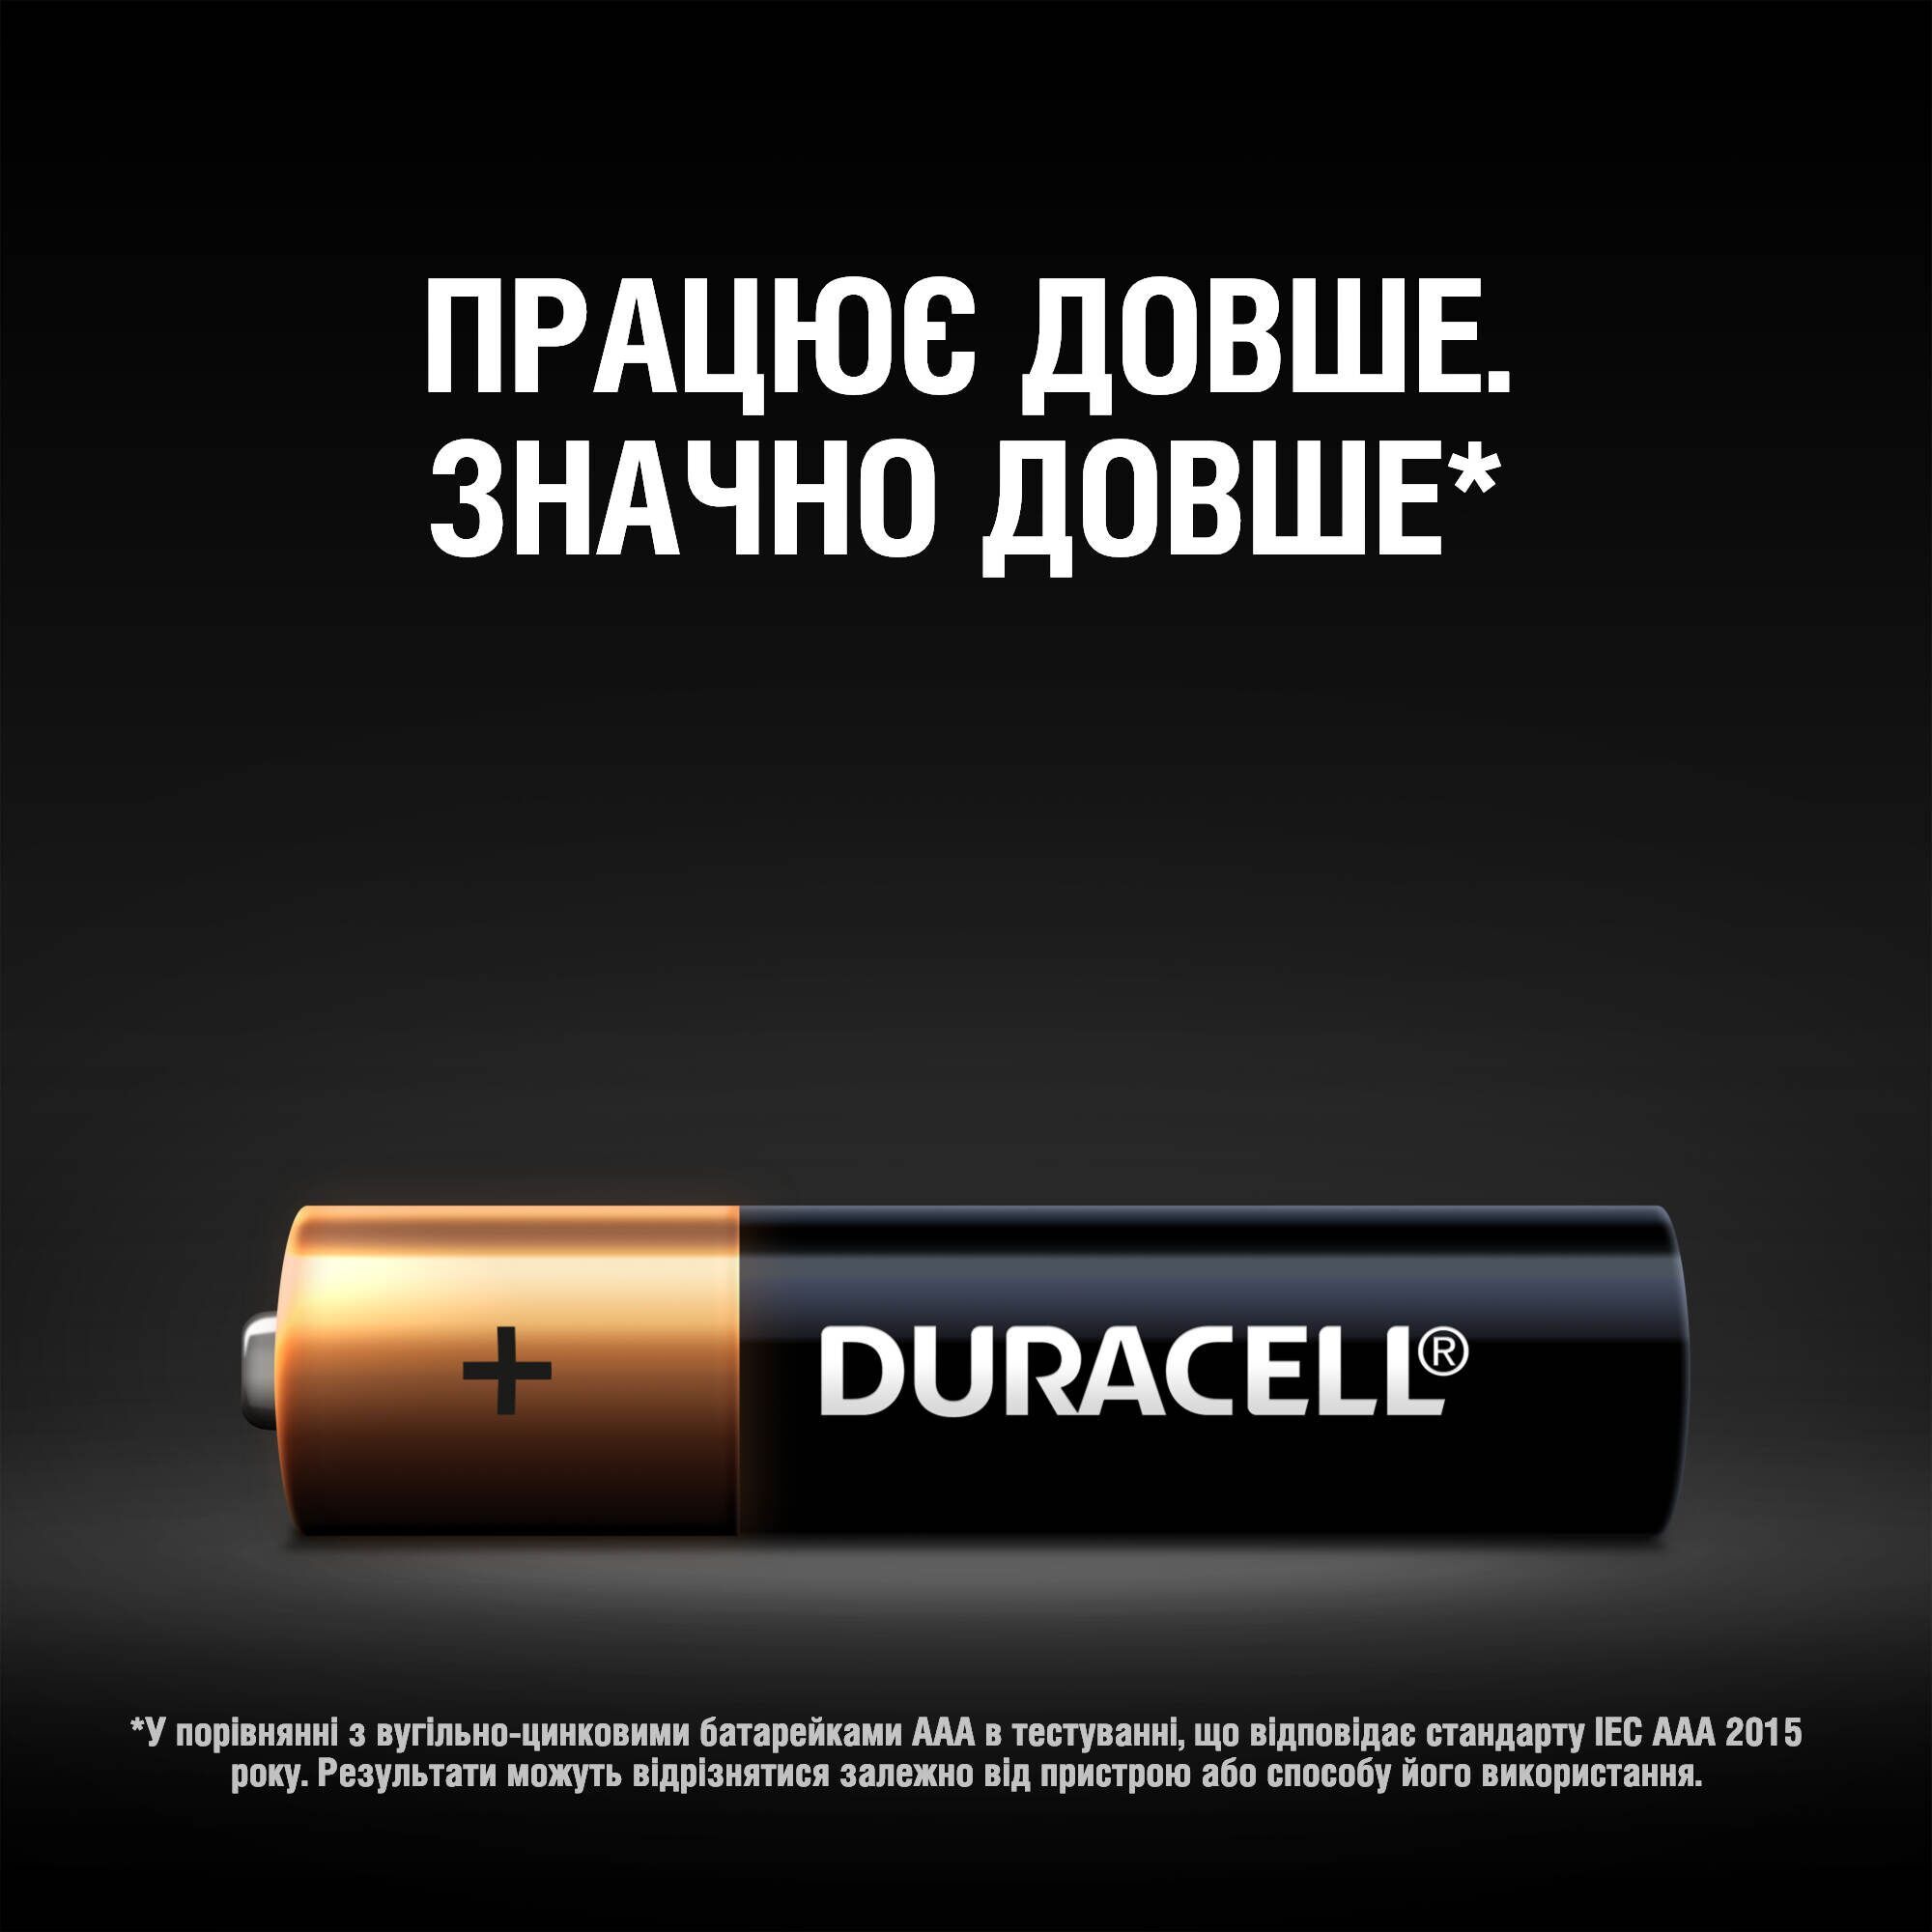 Лужні батарейки мізинчикові Duracell 1.5 V AAA LR03/MN2400, 4 шт. (706006) - фото 7